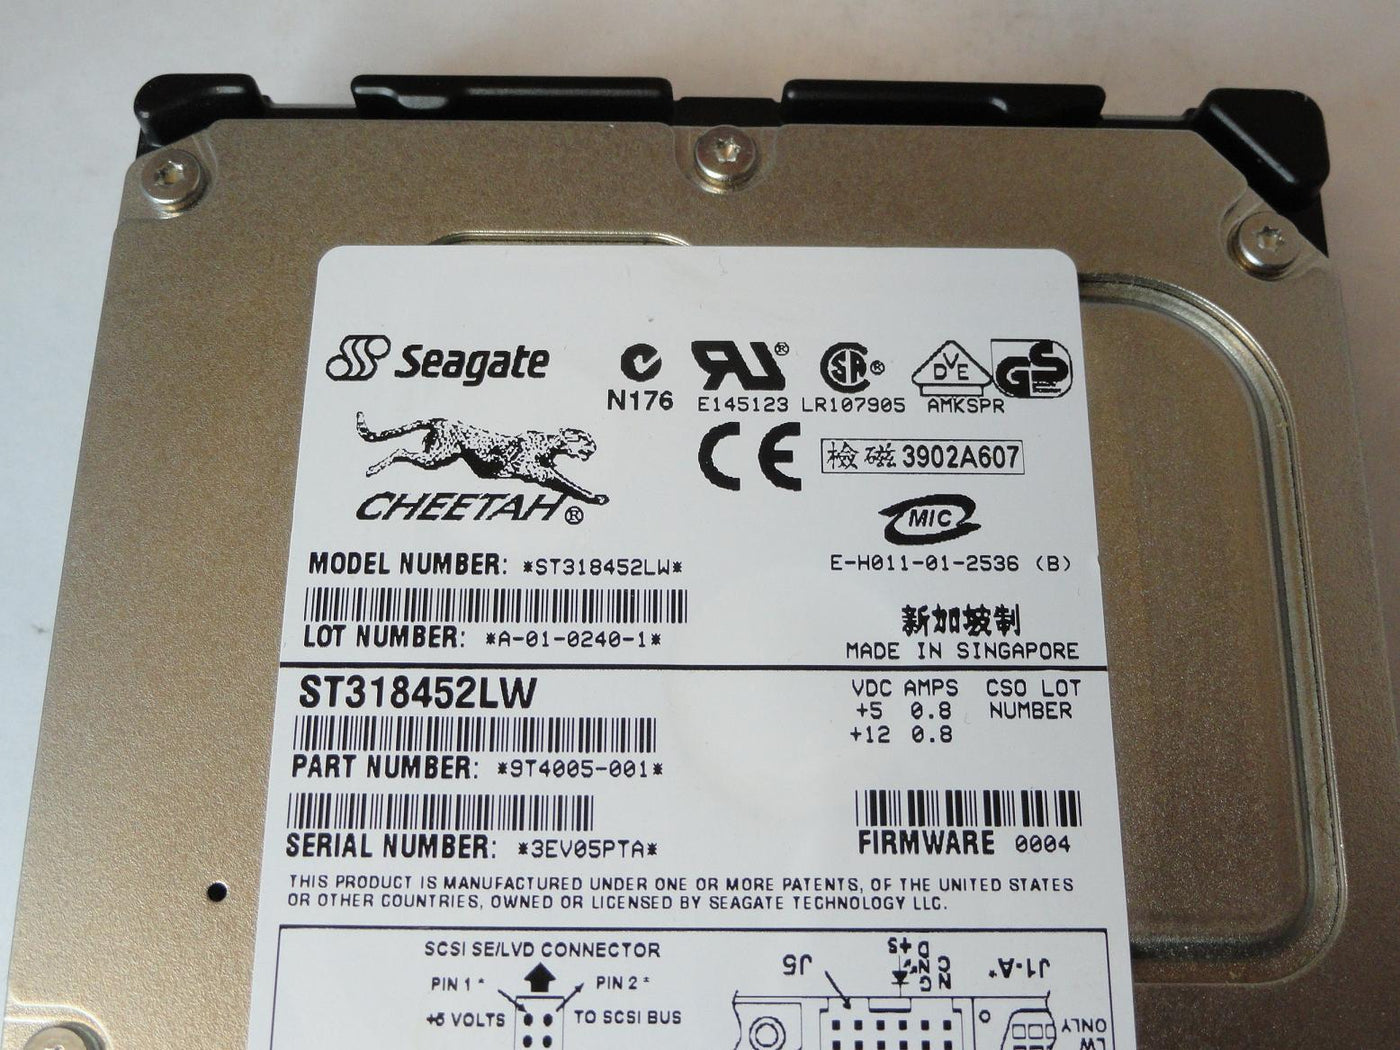 PR22085_9T4005-001_Seagate 18.4GB SCSI 68 Pin 15Krpm 3.5in HDD - Image3